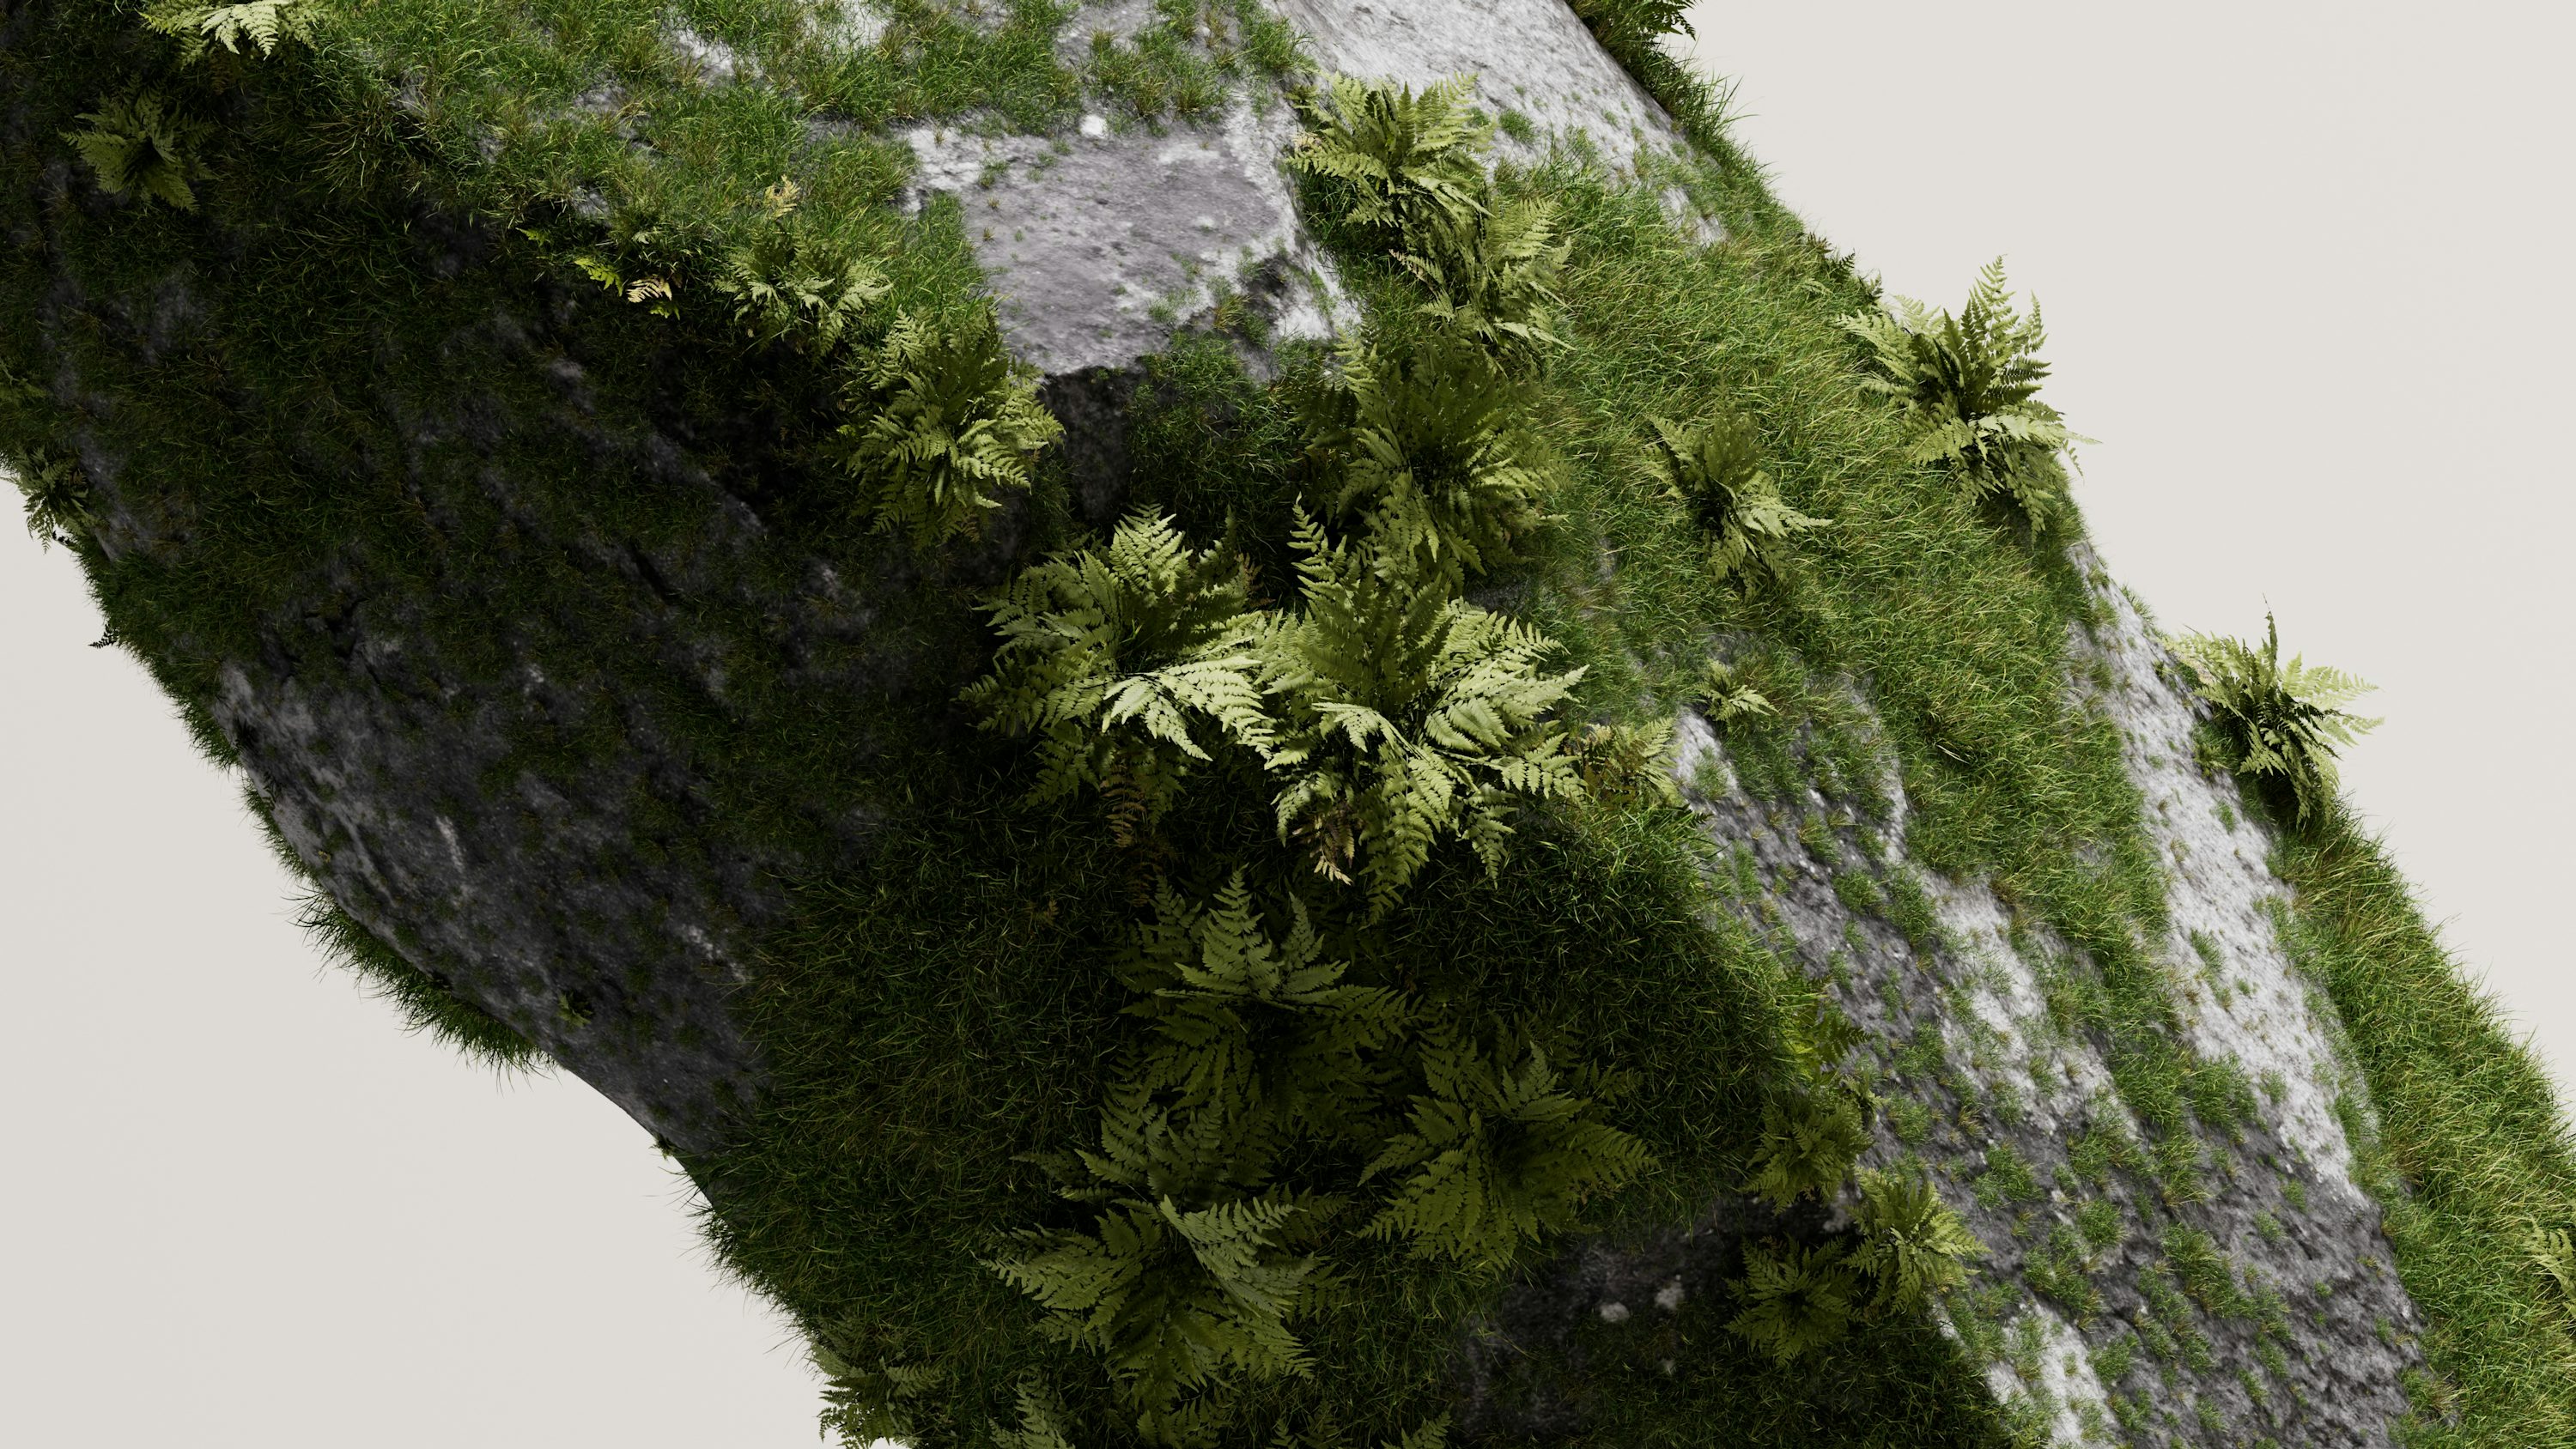 eine grüne Pflanze, die aus der Seite eines Felsens wächst